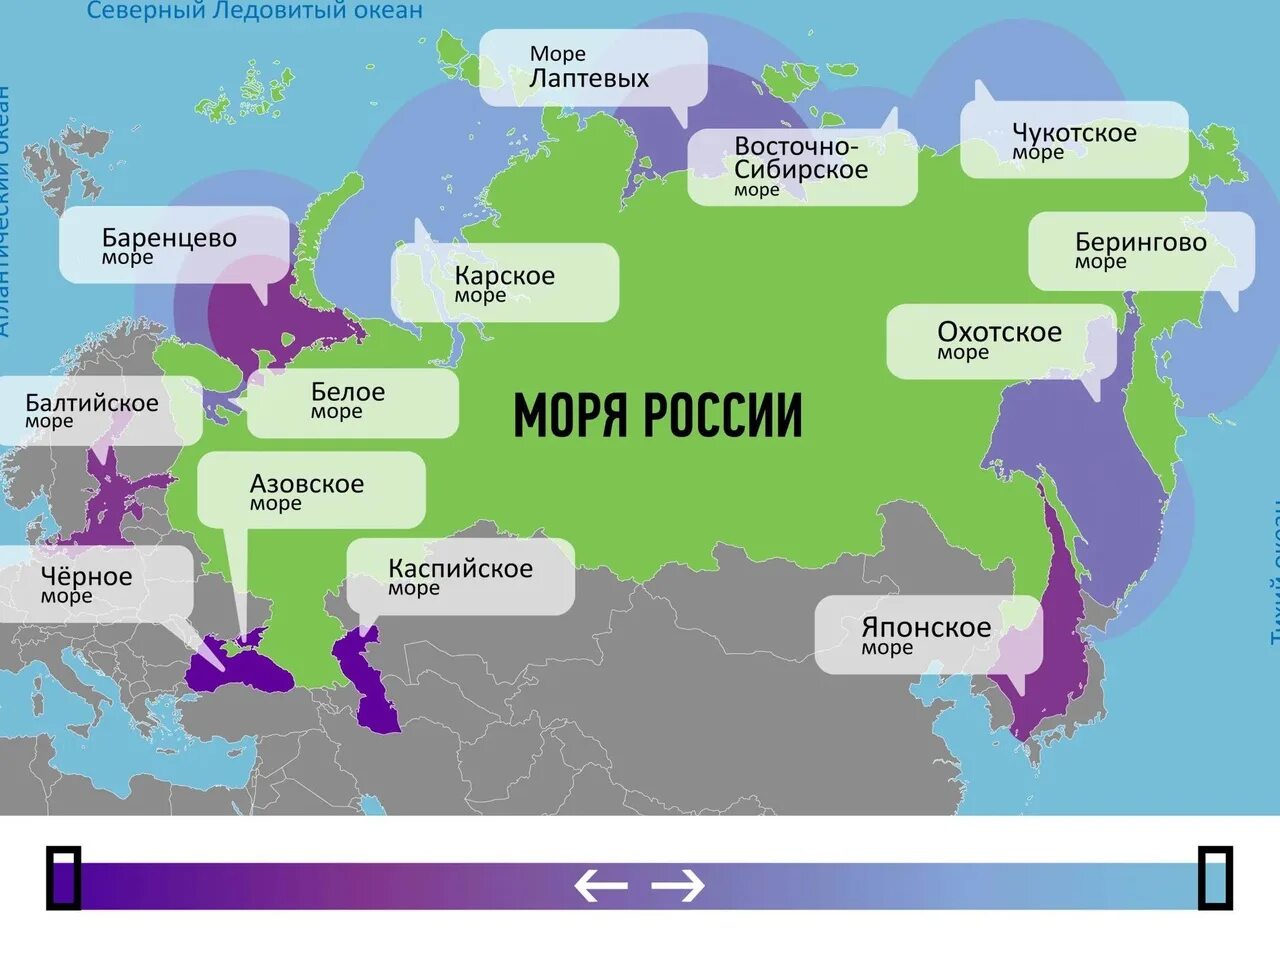 Моря омывающие Россию на карте. Моря омывающие Россию. Моря России на карте. Моря и океаны омывающие Россию на карте. Моря океаны рф